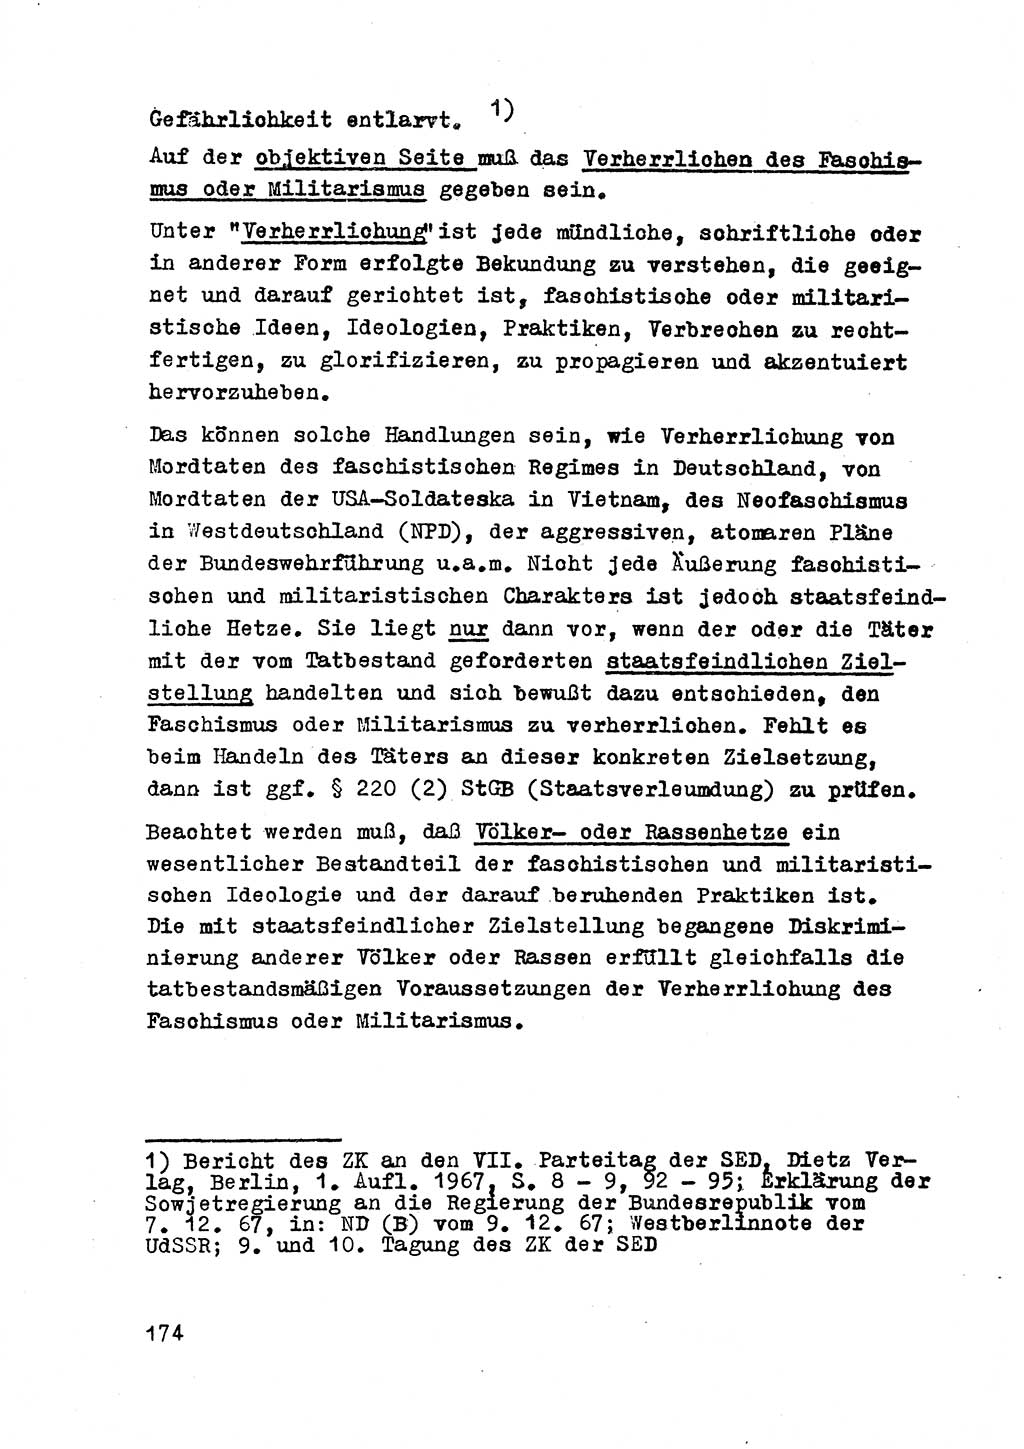 Strafrecht der DDR (Deutsche Demokratische Republik), Besonderer Teil, Lehrmaterial, Heft 2 1969, Seite 174 (Strafr. DDR BT Lehrmat. H. 2 1969, S. 174)